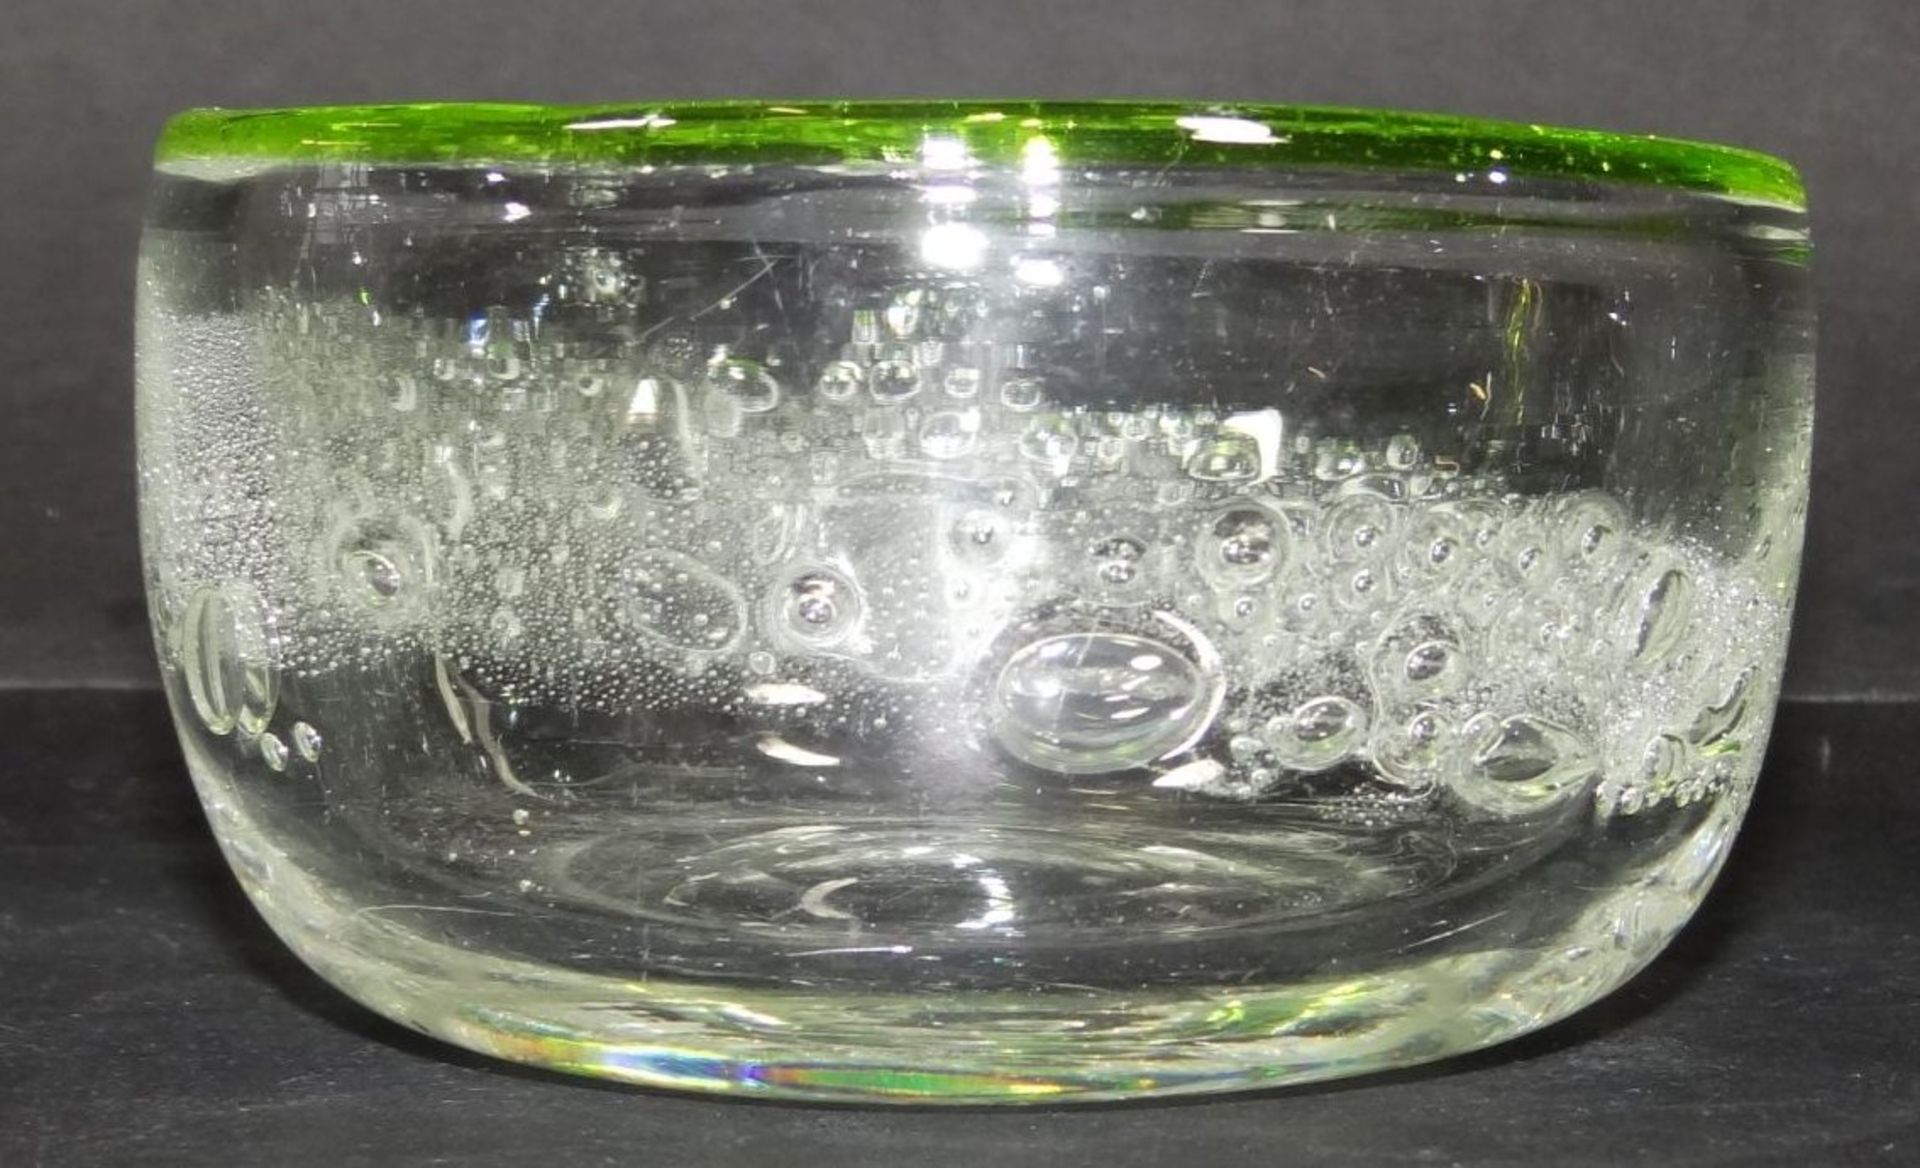 Kunstglasschälchen mit Luftblasen, grüner Rand, H-6 cm, D-10- - -22.61 % buyer's premium on the